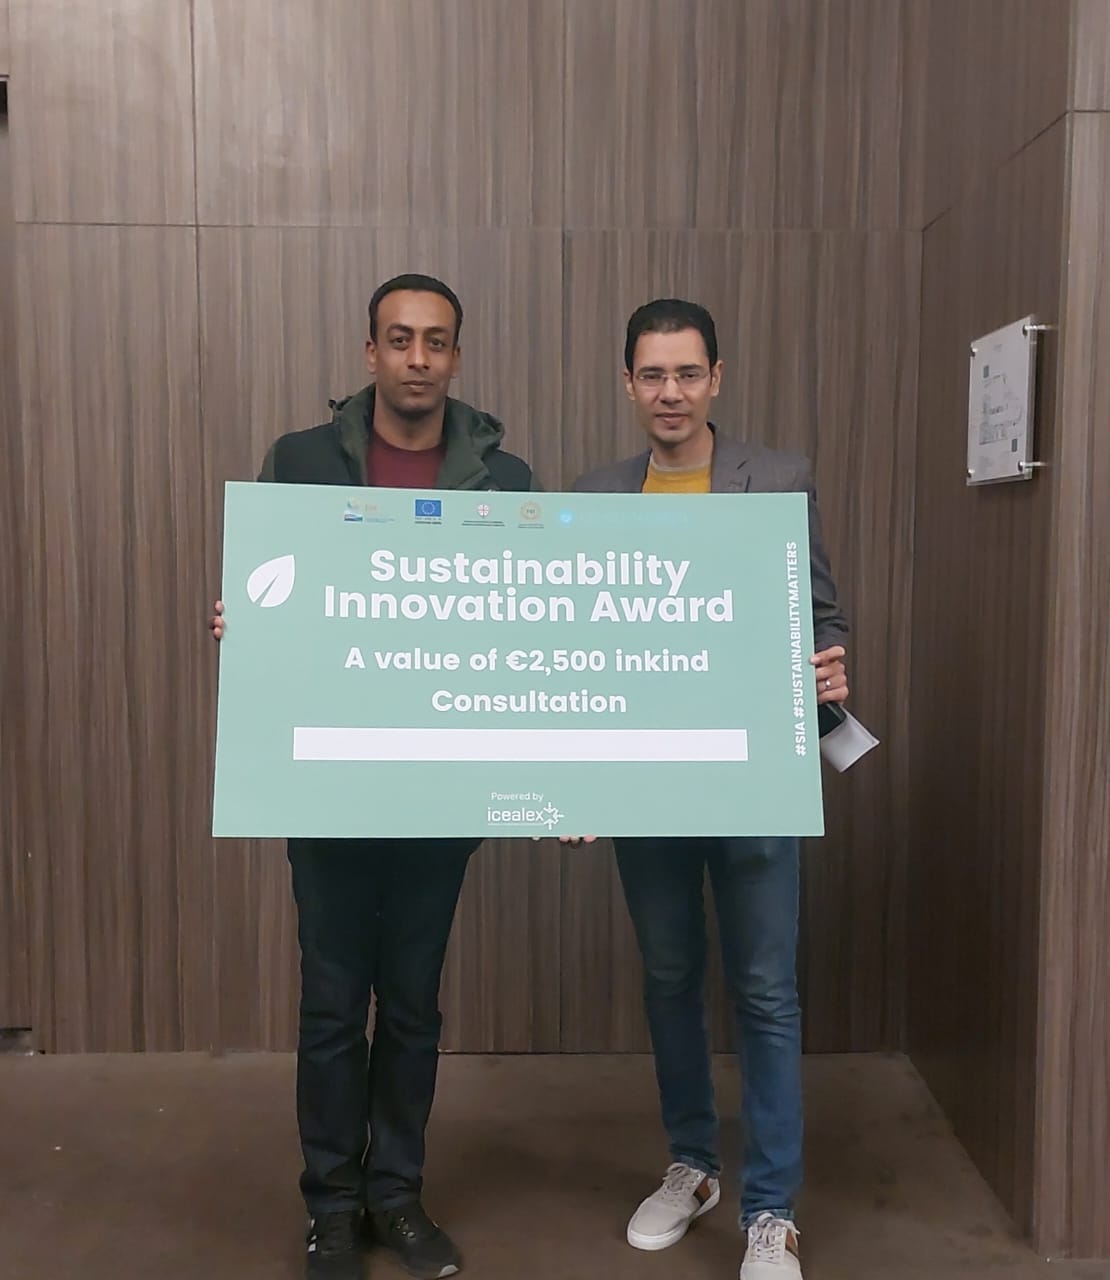 فريق الهندسة الإلكترونية بالمنوفية يفوز بجائزة الابتكار فى الاستدامة المقدمة من اتحاد الصناعات المصرية والاتحاد الأوروبي 